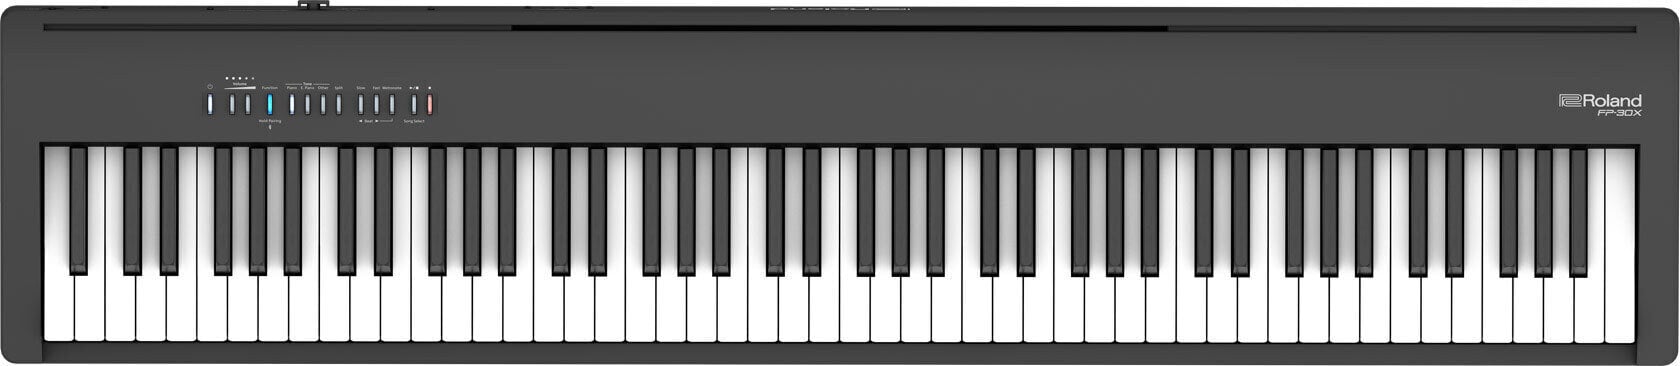 Piano digital de palco Roland FP 30X BK Piano digital de palco